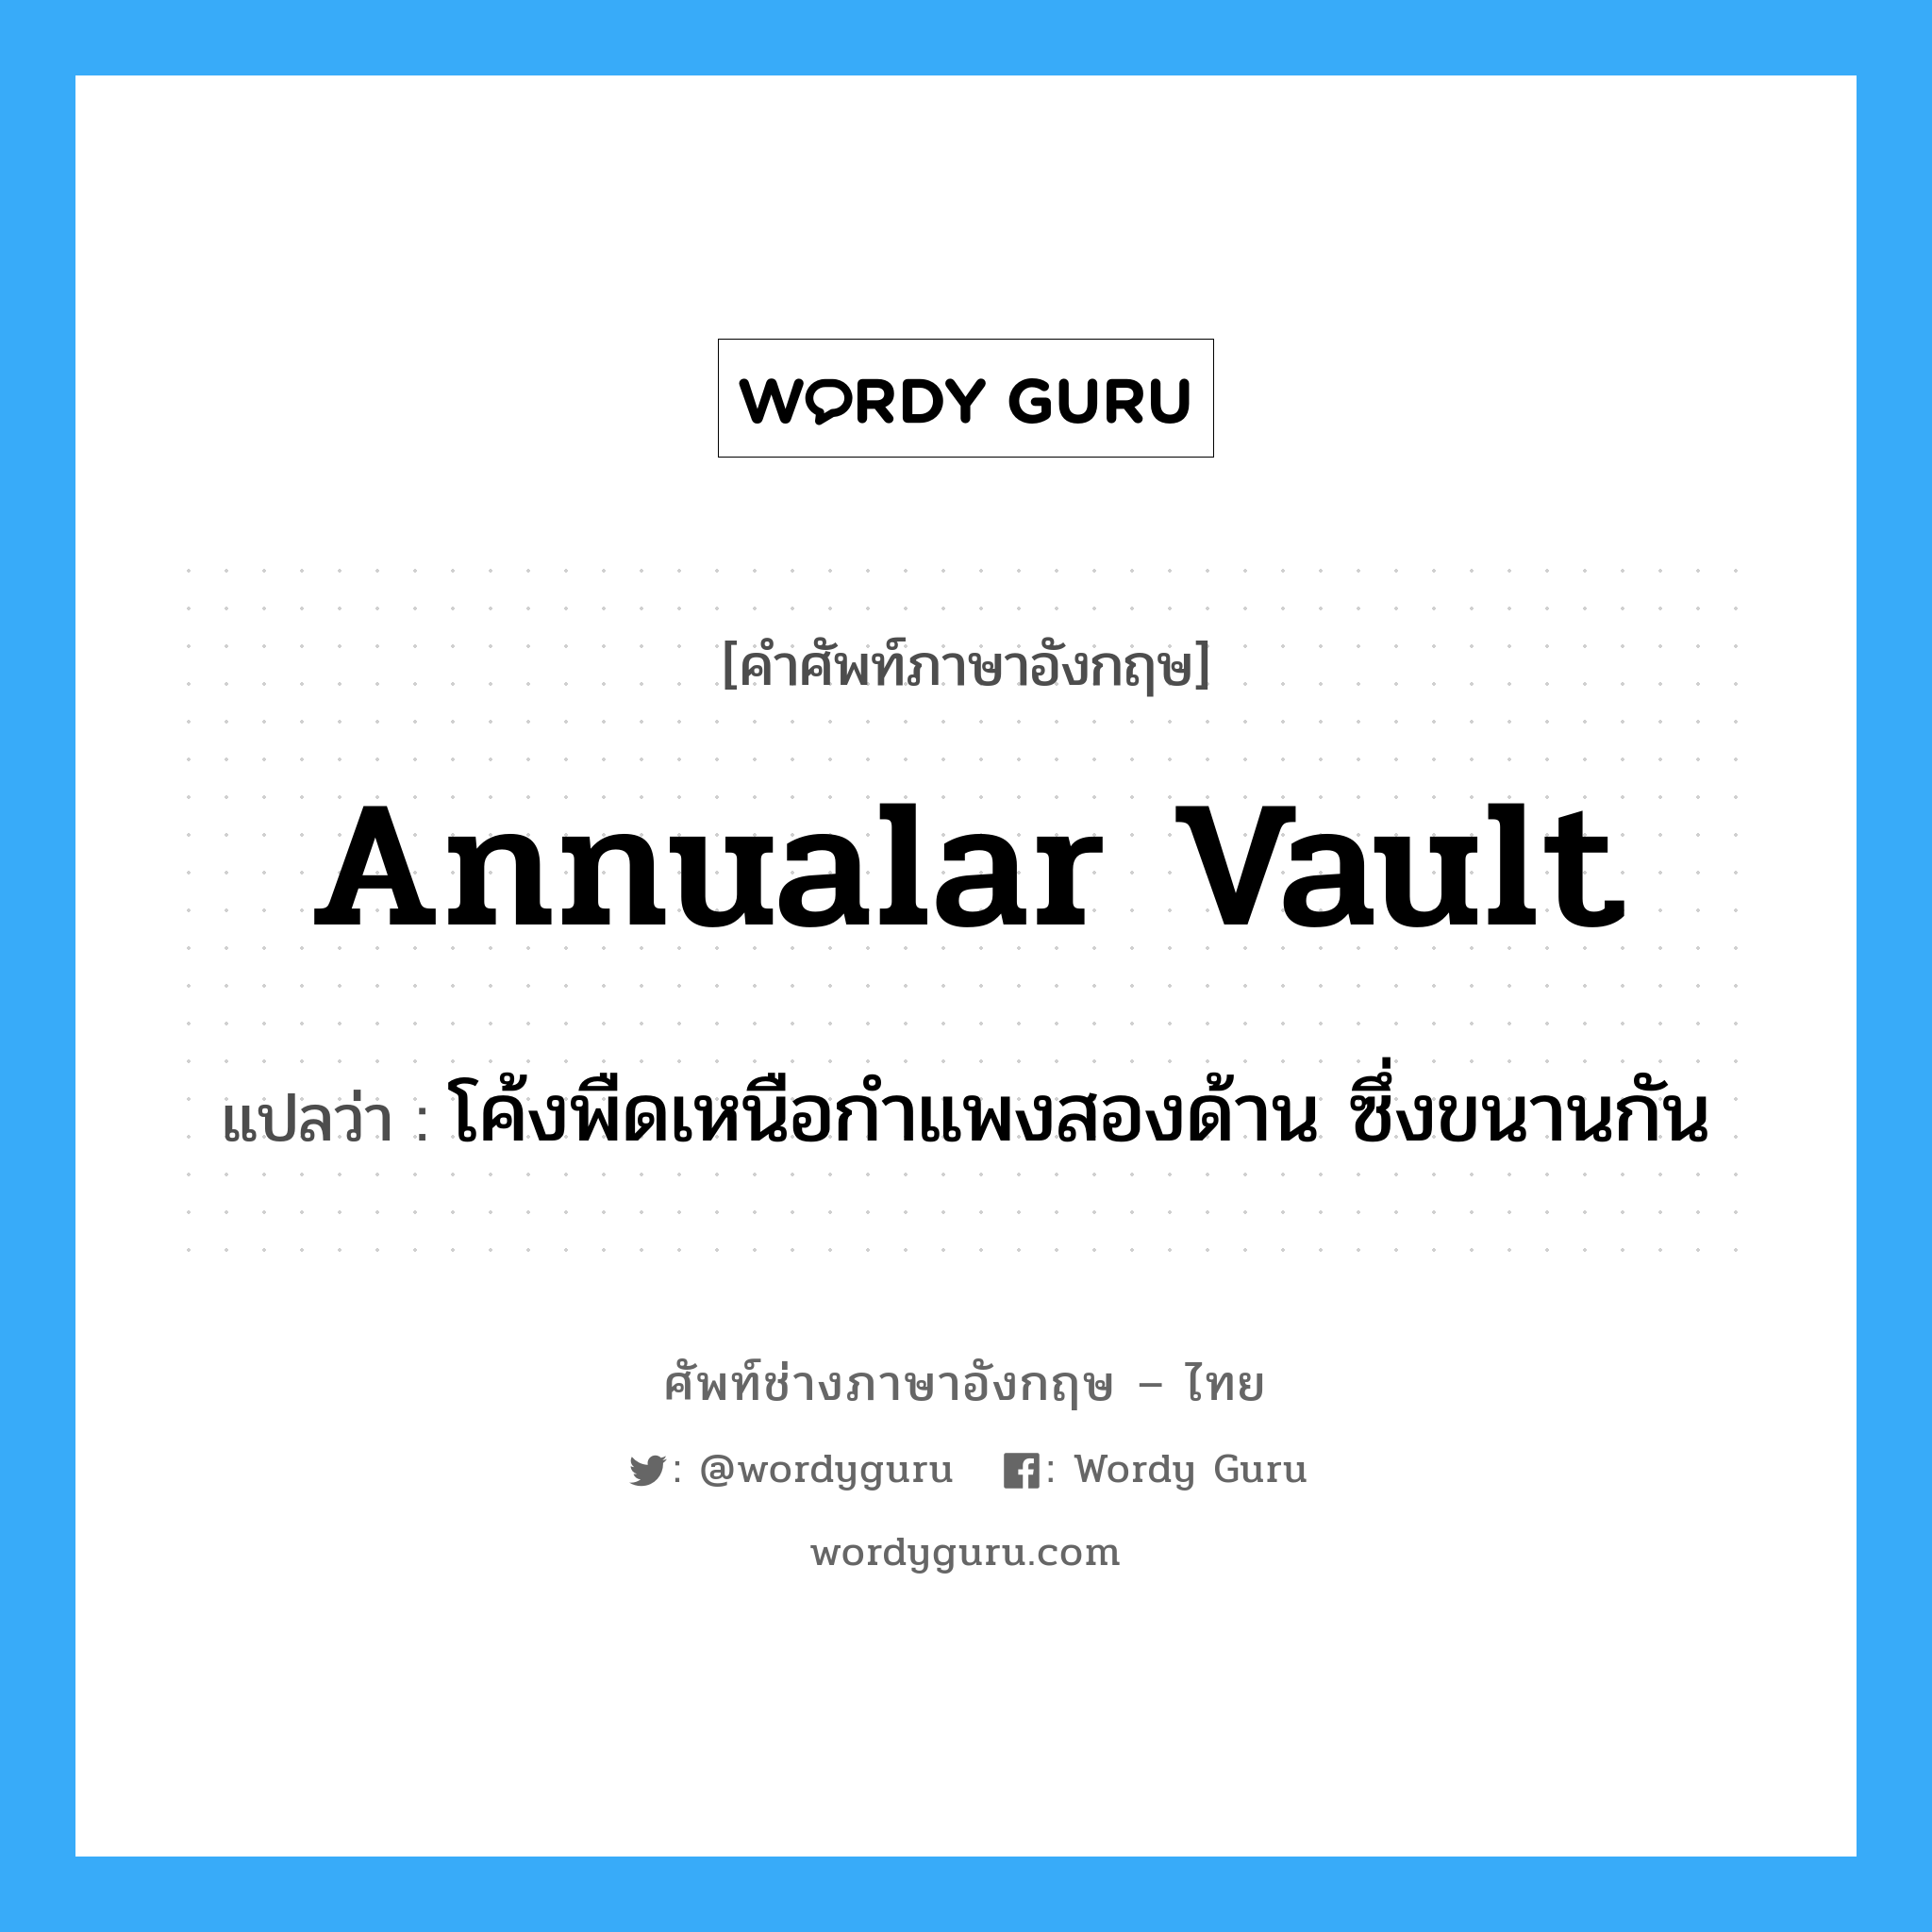 annualar vault แปลว่า?, คำศัพท์ช่างภาษาอังกฤษ - ไทย annualar vault คำศัพท์ภาษาอังกฤษ annualar vault แปลว่า โค้งพืดเหนือกำแพงสองด้าน ซึ่งขนานกัน